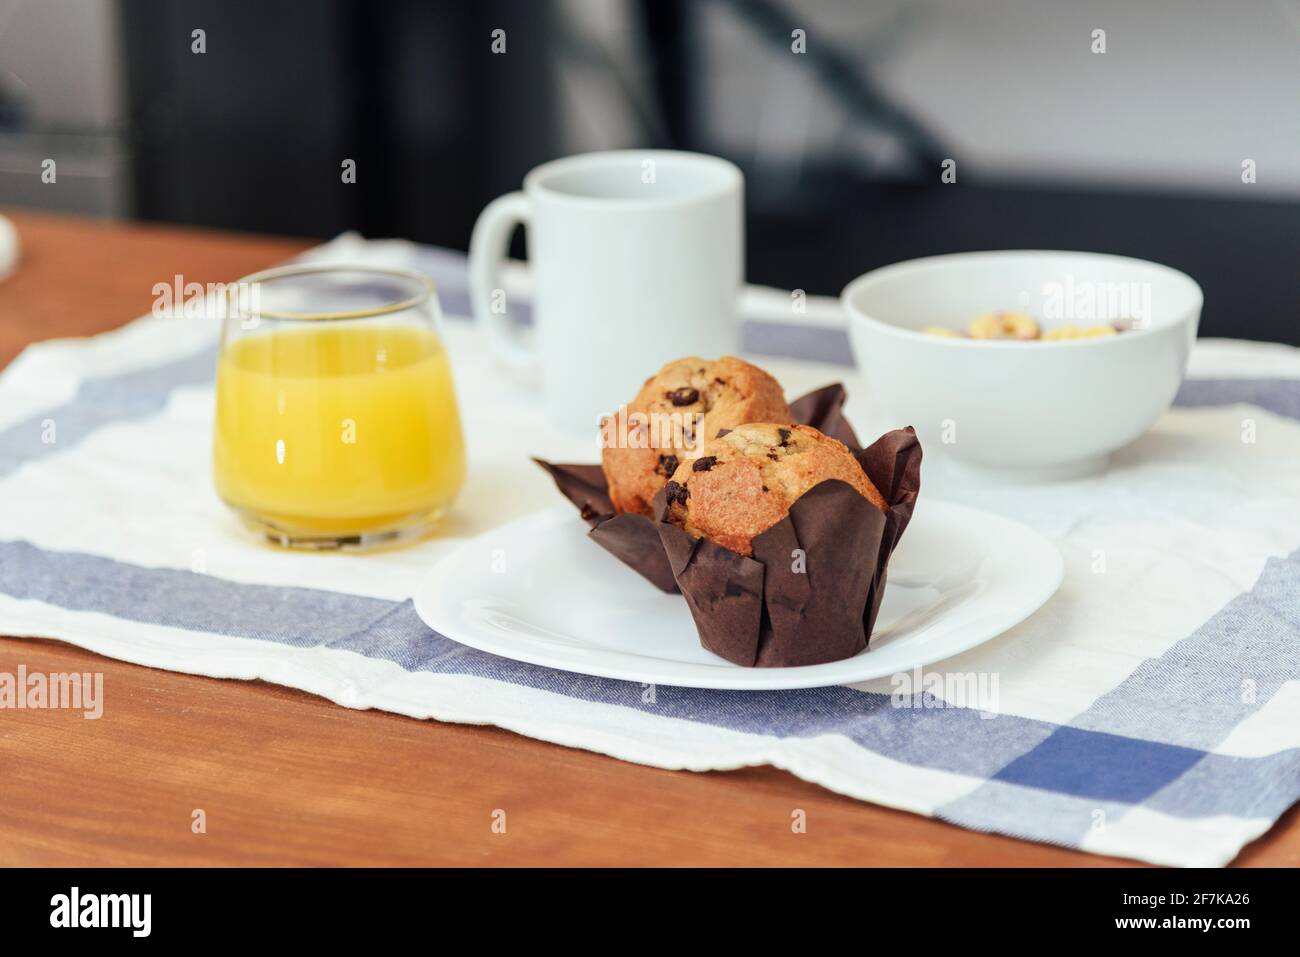 Le petit-déjeuner se compose de café, de jus d'orange, de muffins et de céréales colorées. Concept de vie domestique. Banque D'Images